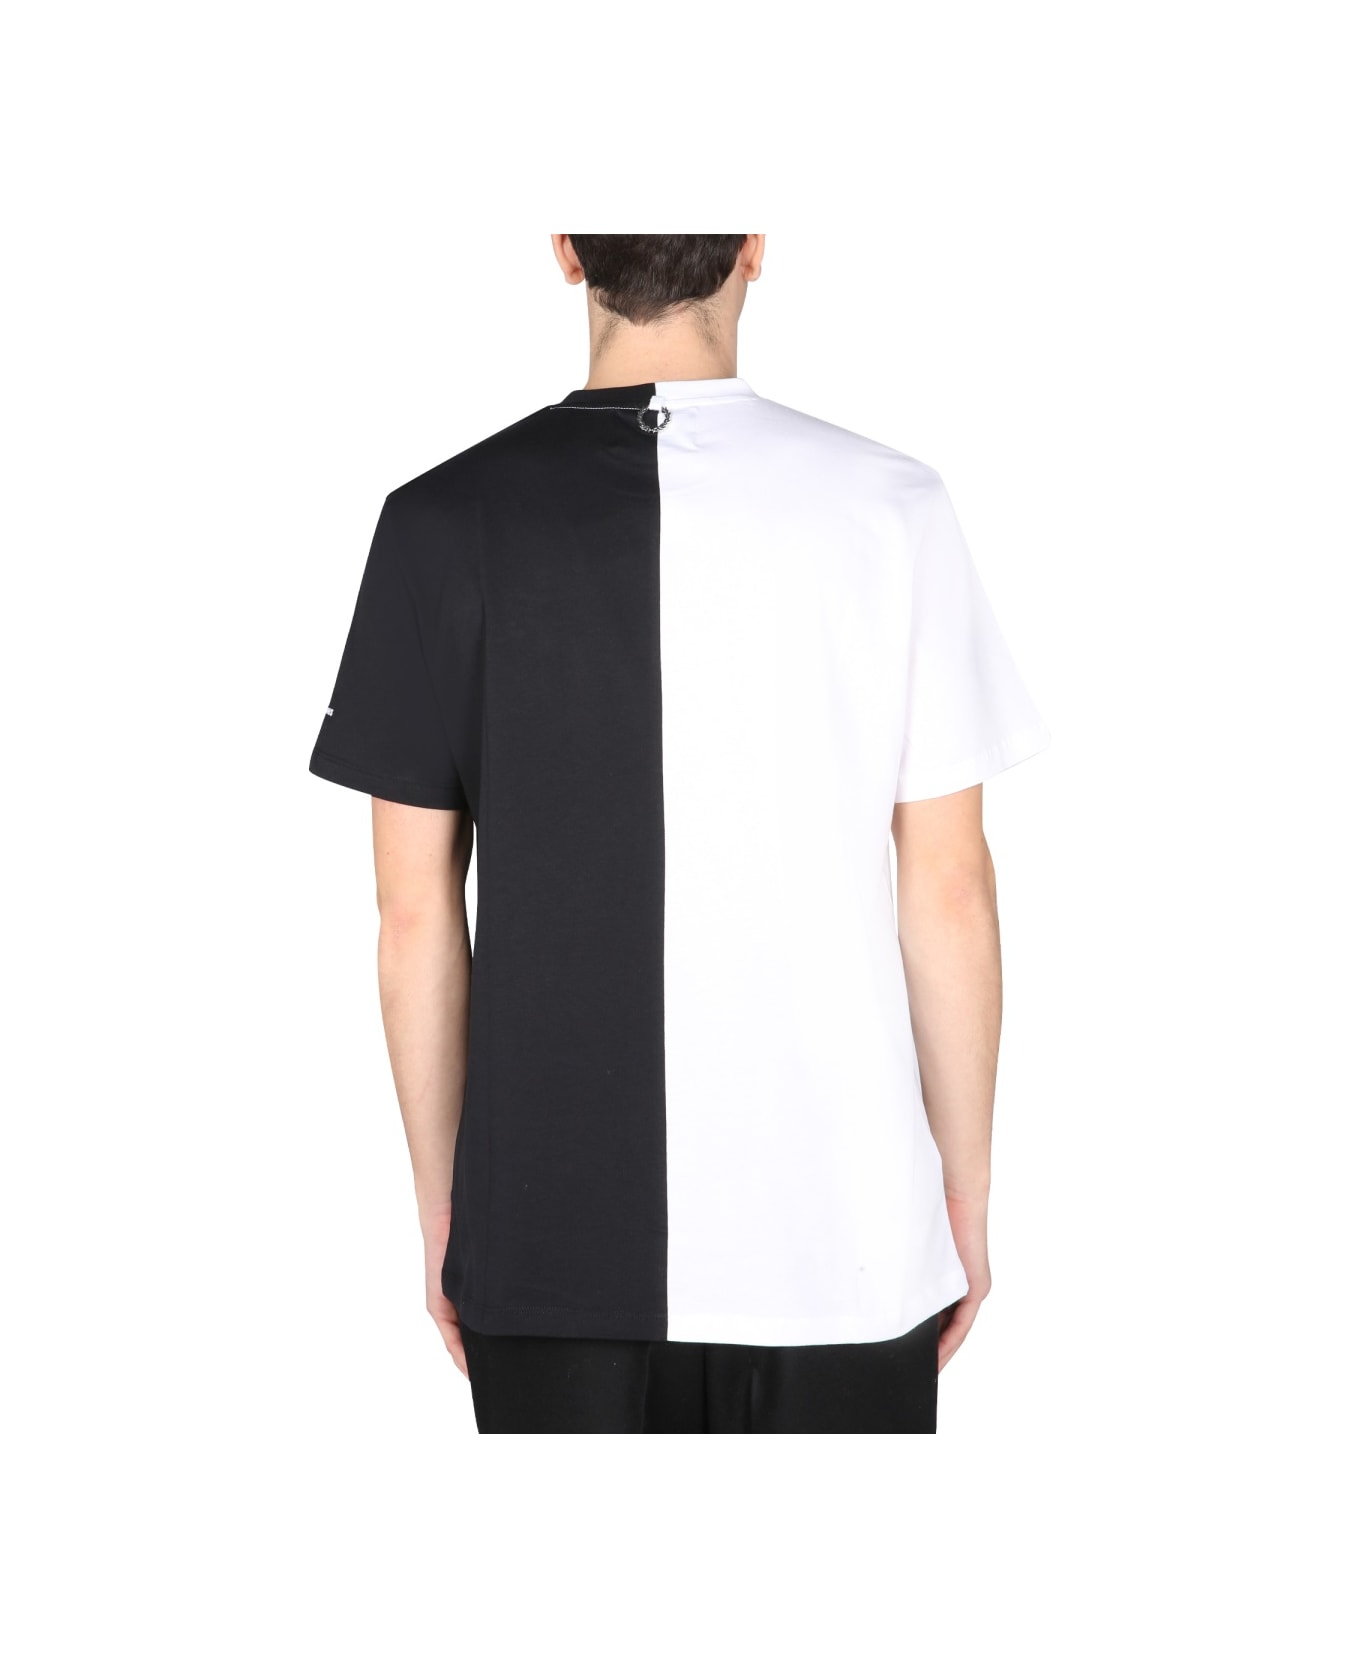 Fred Perry by Raf Simons Split T-shirt - BLACK シャツ